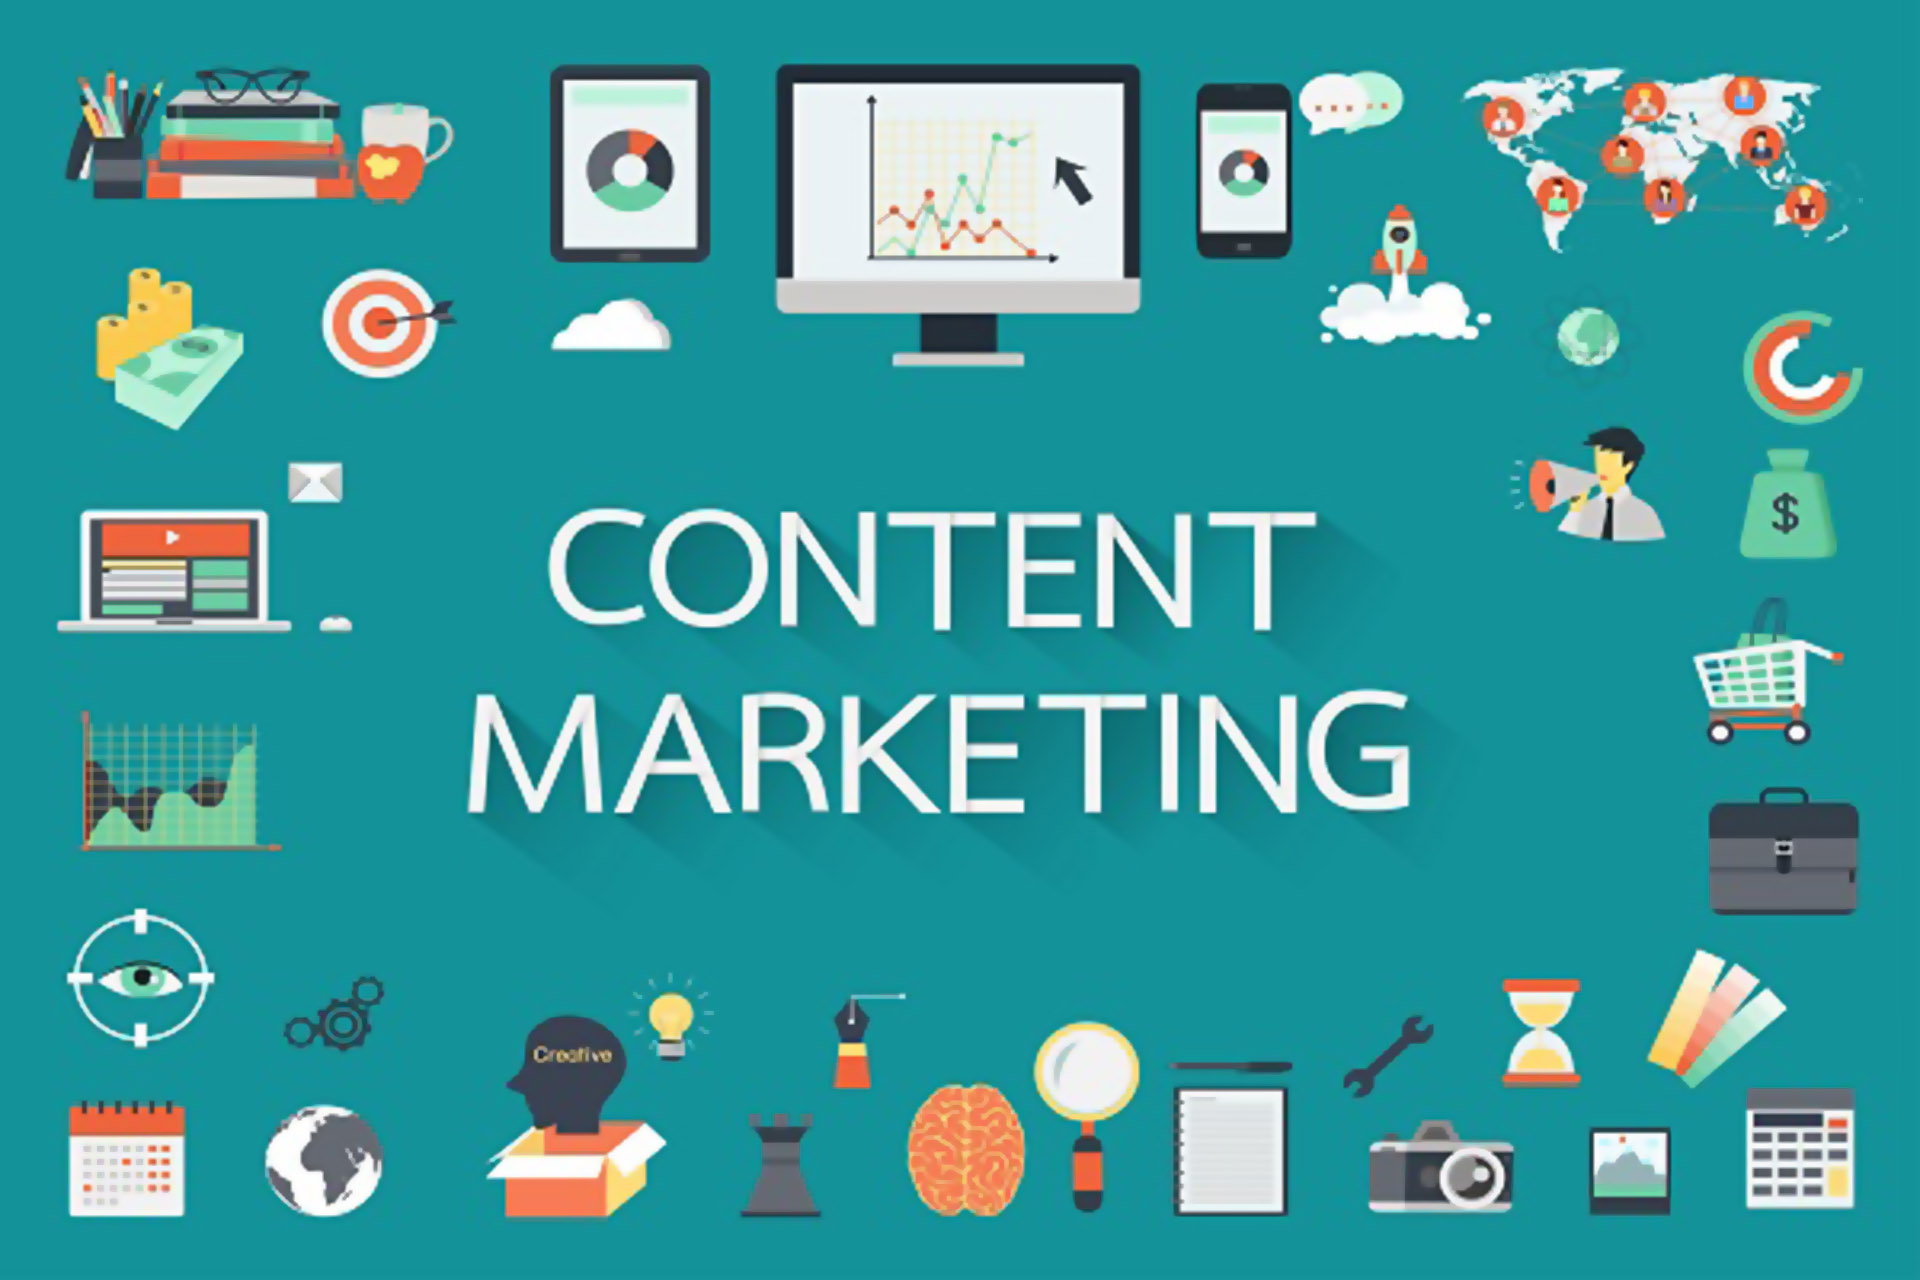 Content Marketing là gì? Lợi ích của Content Marketing với doanh nghiệp.